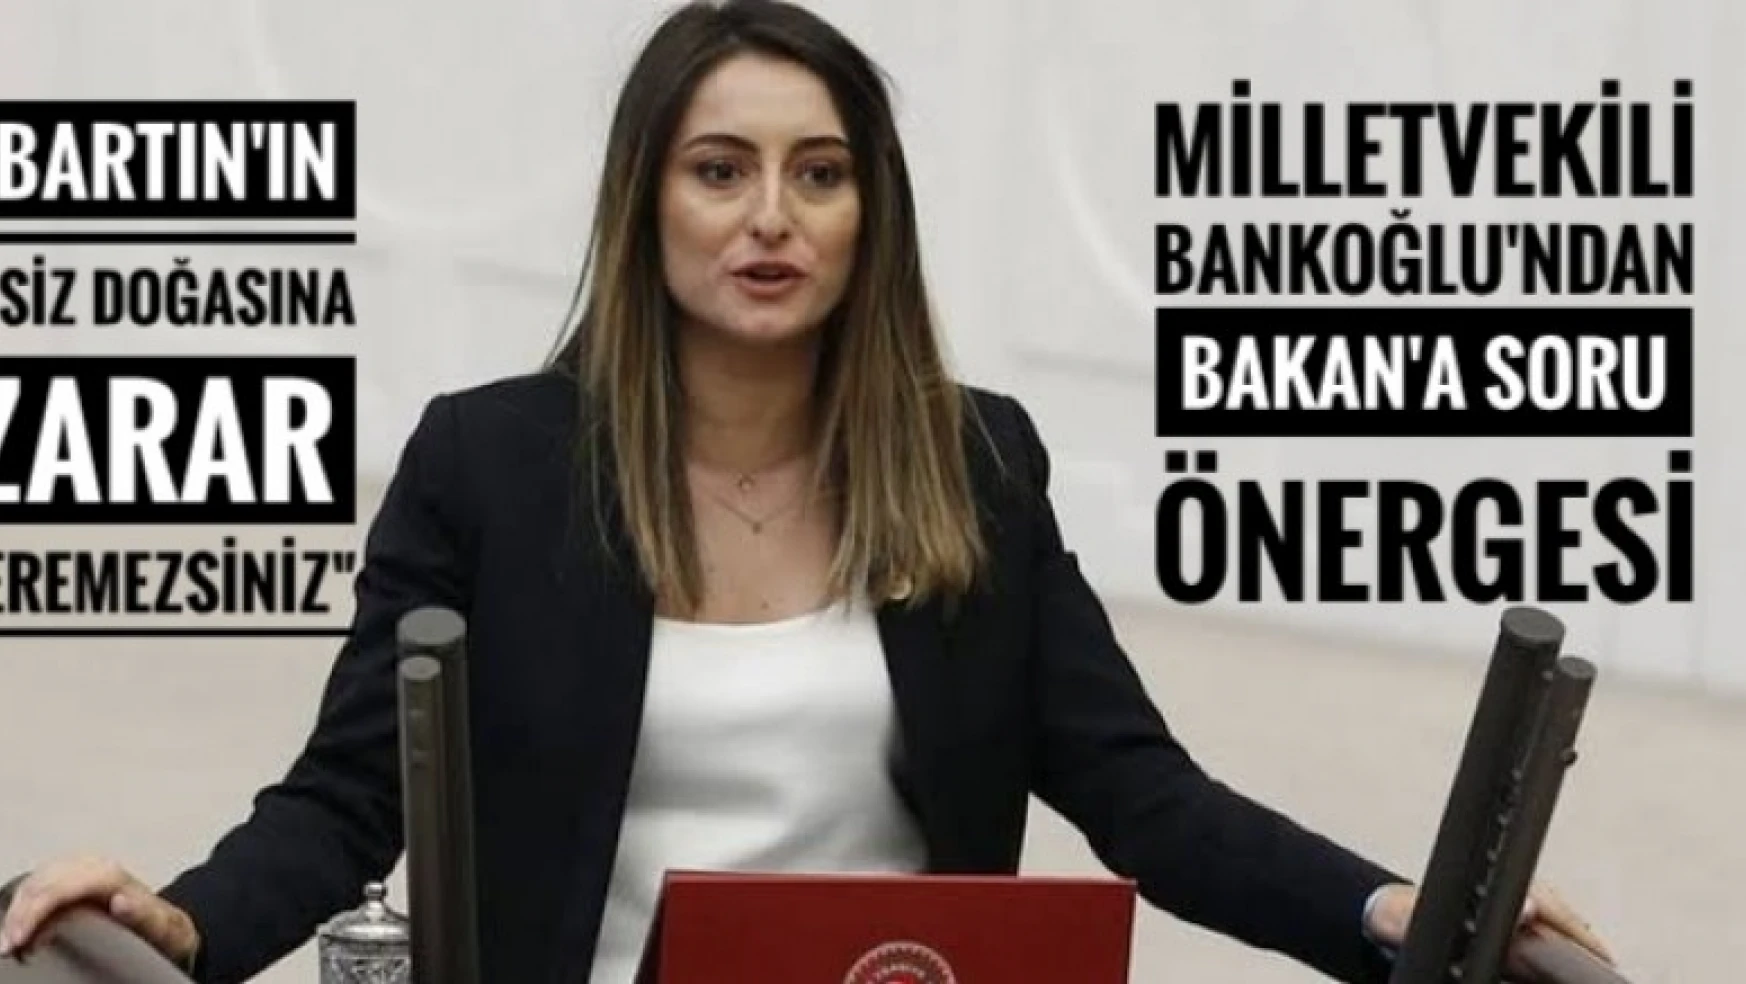 MİLLETVEKİLİ BANKOĞLU 'BARTIN'IN EŞSİZ DOĞASINA ZARAR VEREMEZSİNİZ'